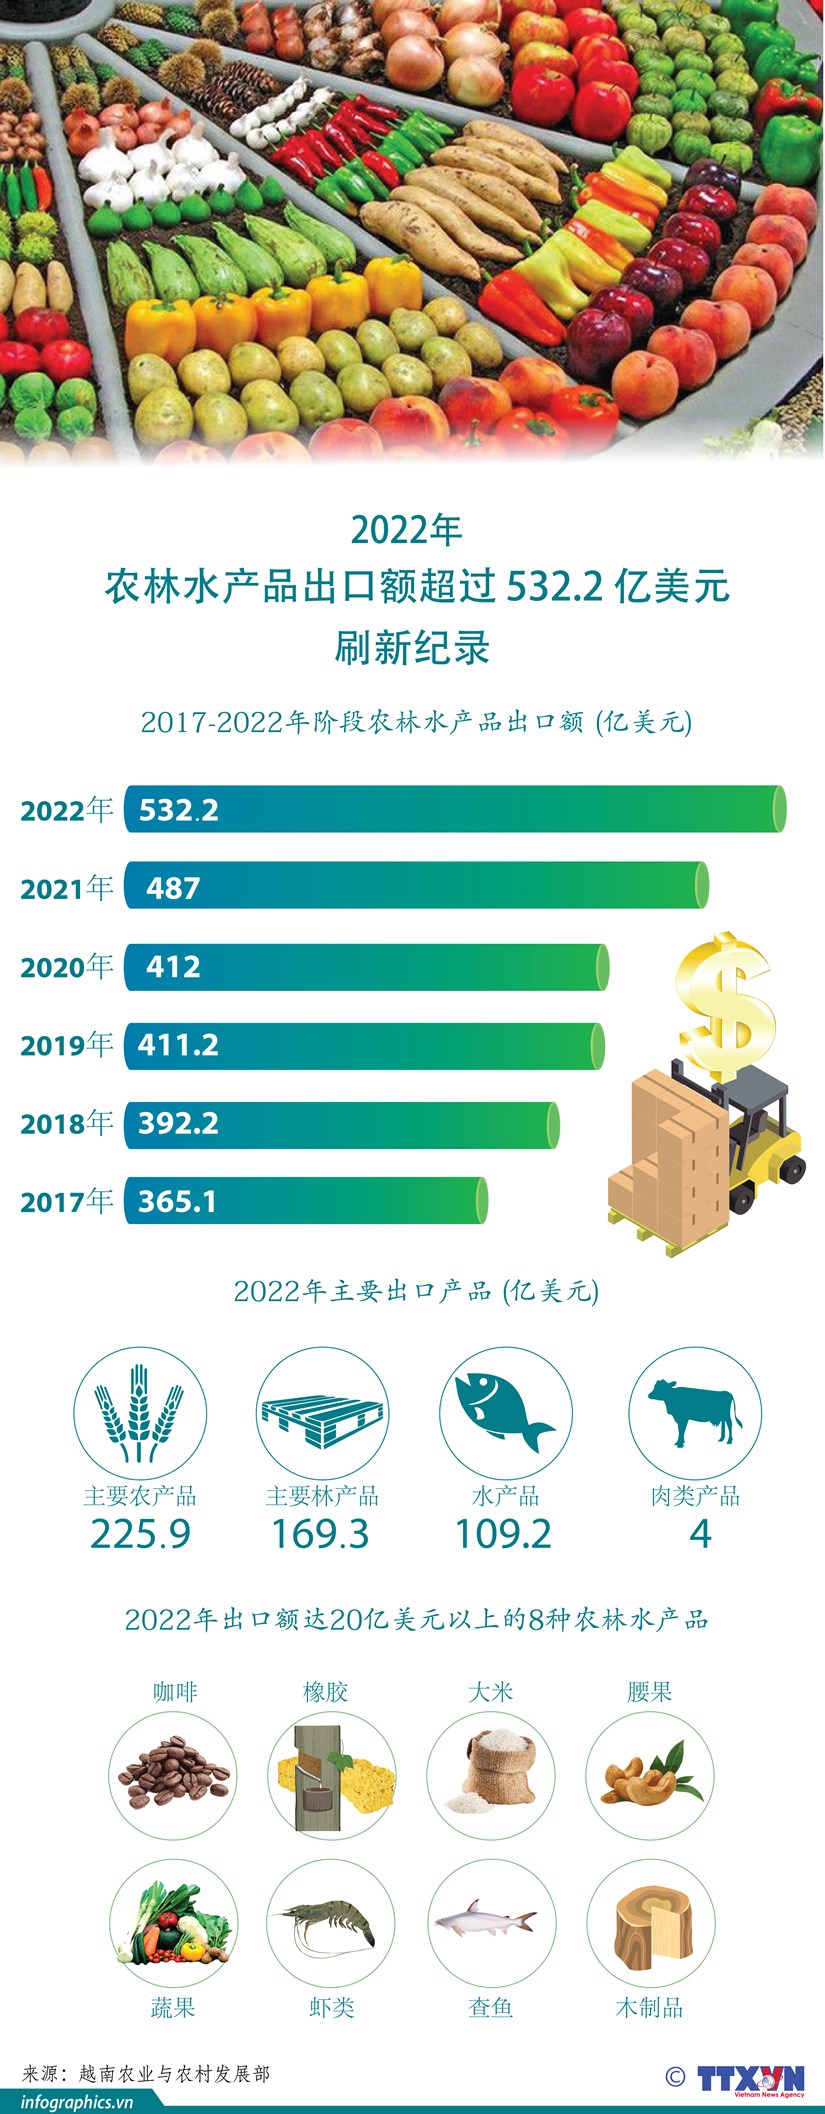 图表新闻：2022年农林水产品出口额超过532.2亿美元 刷新记录 hinh anh 1